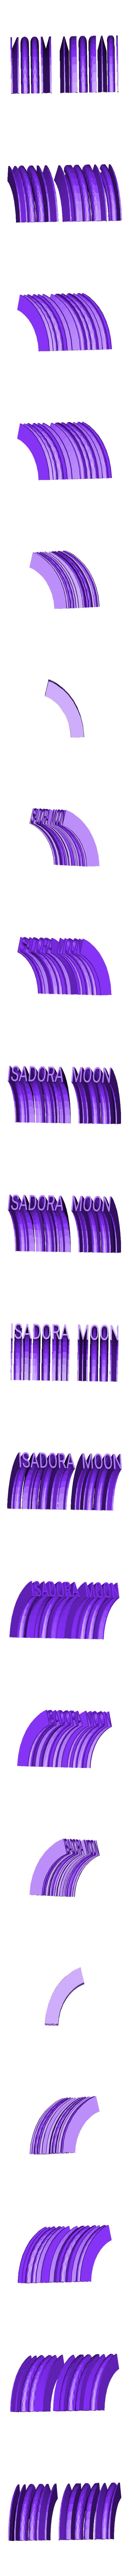 letras.obj Download OBJ file Isadora moon • 3D print model, jorgeps4